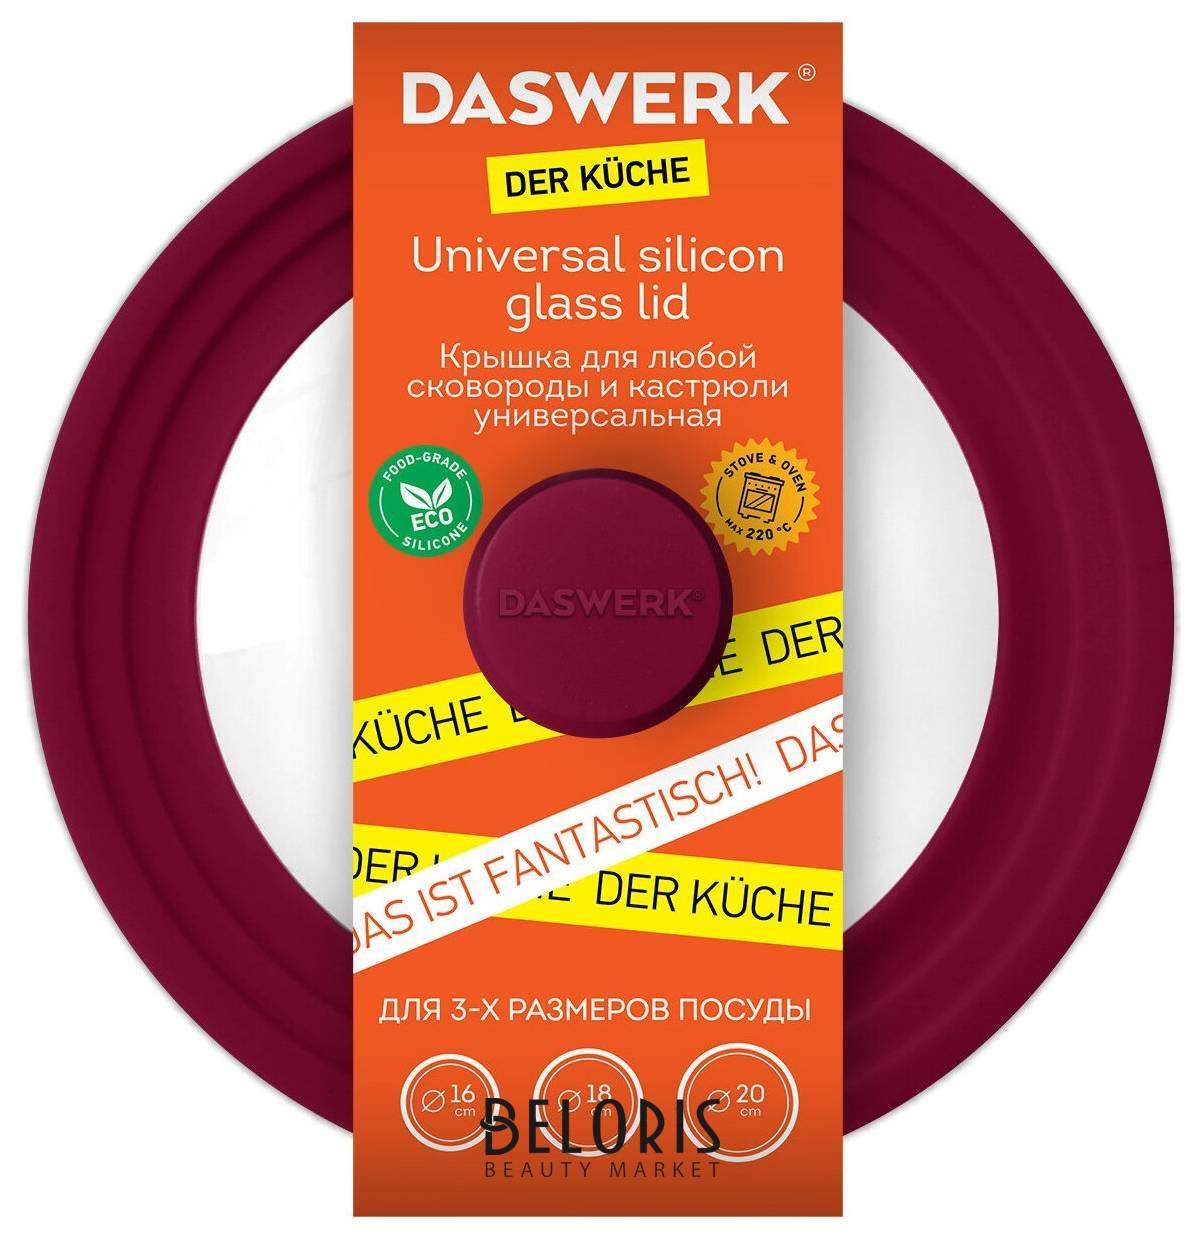 Крышка для любой сковороды и кастрюли универсальная 3 размера (16-18-20 см) бордовая, Daswerk, 607584 Daswerk